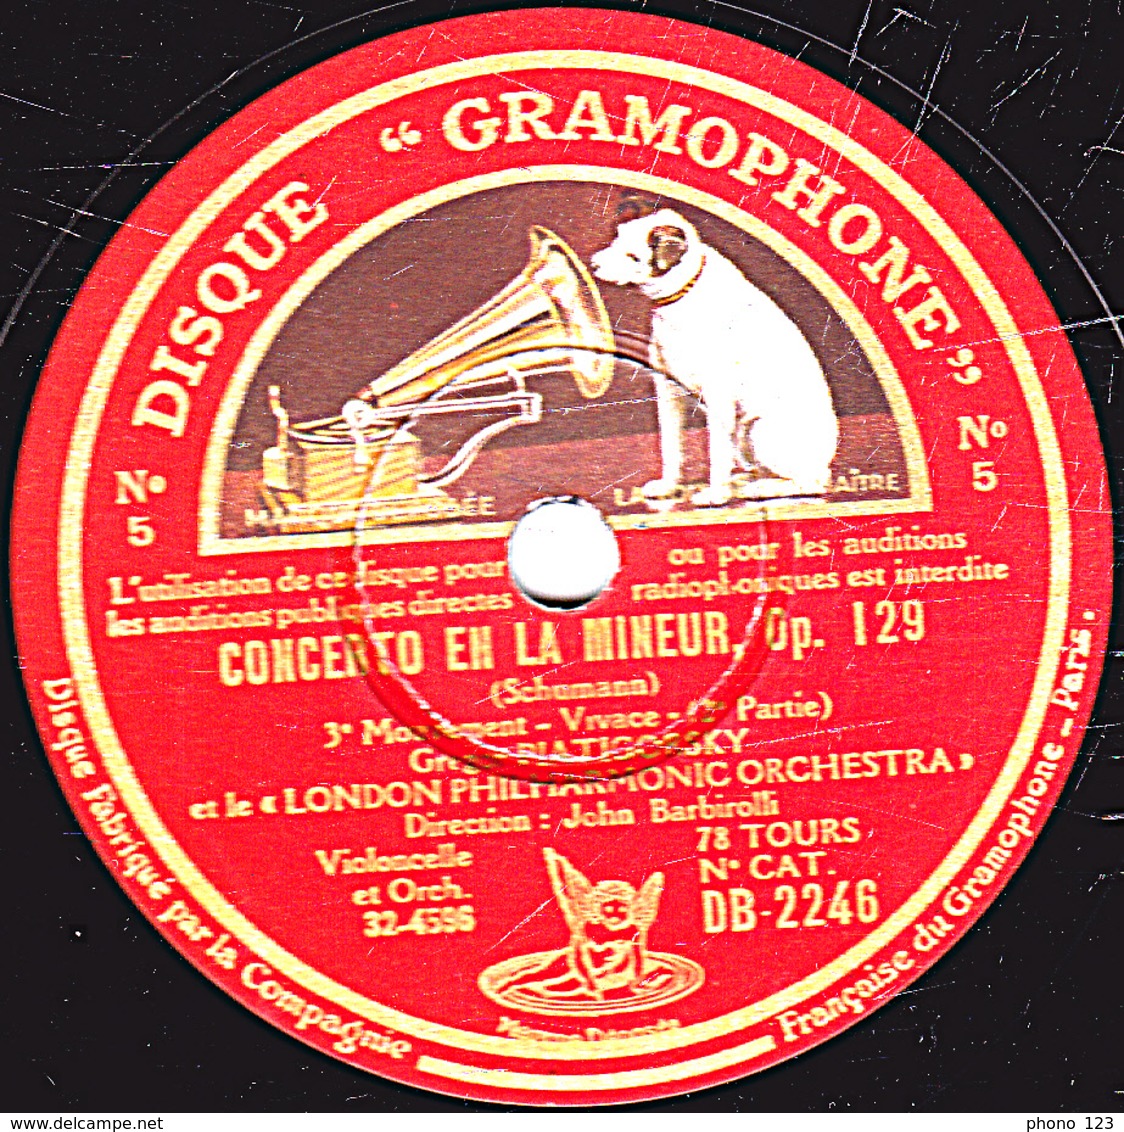 78 Trs 30 Cm état TB 2 Disques - CONCERTO EN LA MINEUR Op. 129 (Schumann) 1er,2e,3e Mouvements Gregor PIATIGORSKY - 78 T - Disques Pour Gramophone